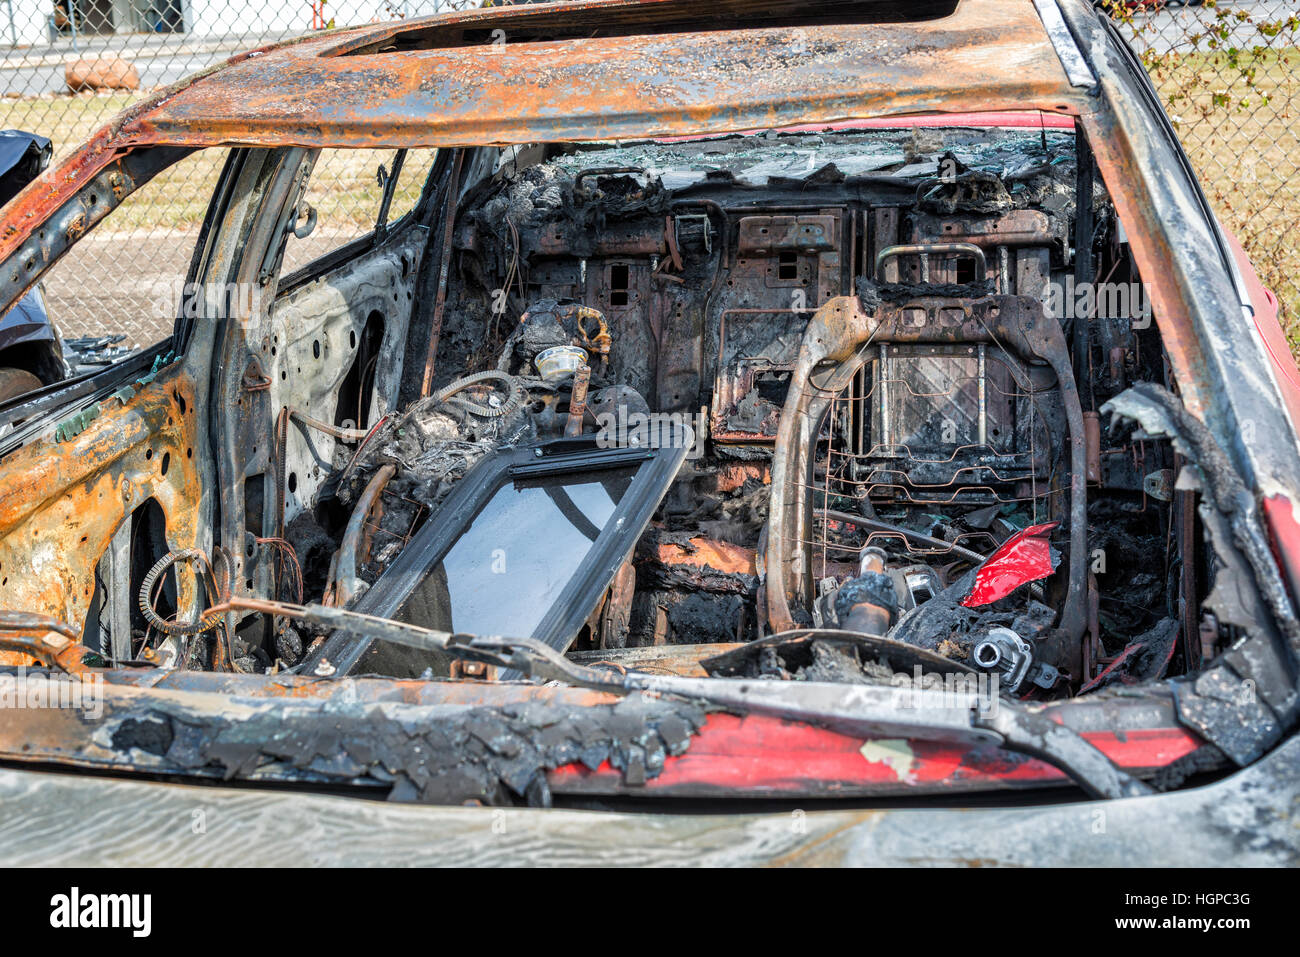 L'intérieur d'une voiture carbonisée qui a été totalement détruit par un incendie de voiture. L'incendie criminel a été suspectée, mais non prouvée. Banque D'Images